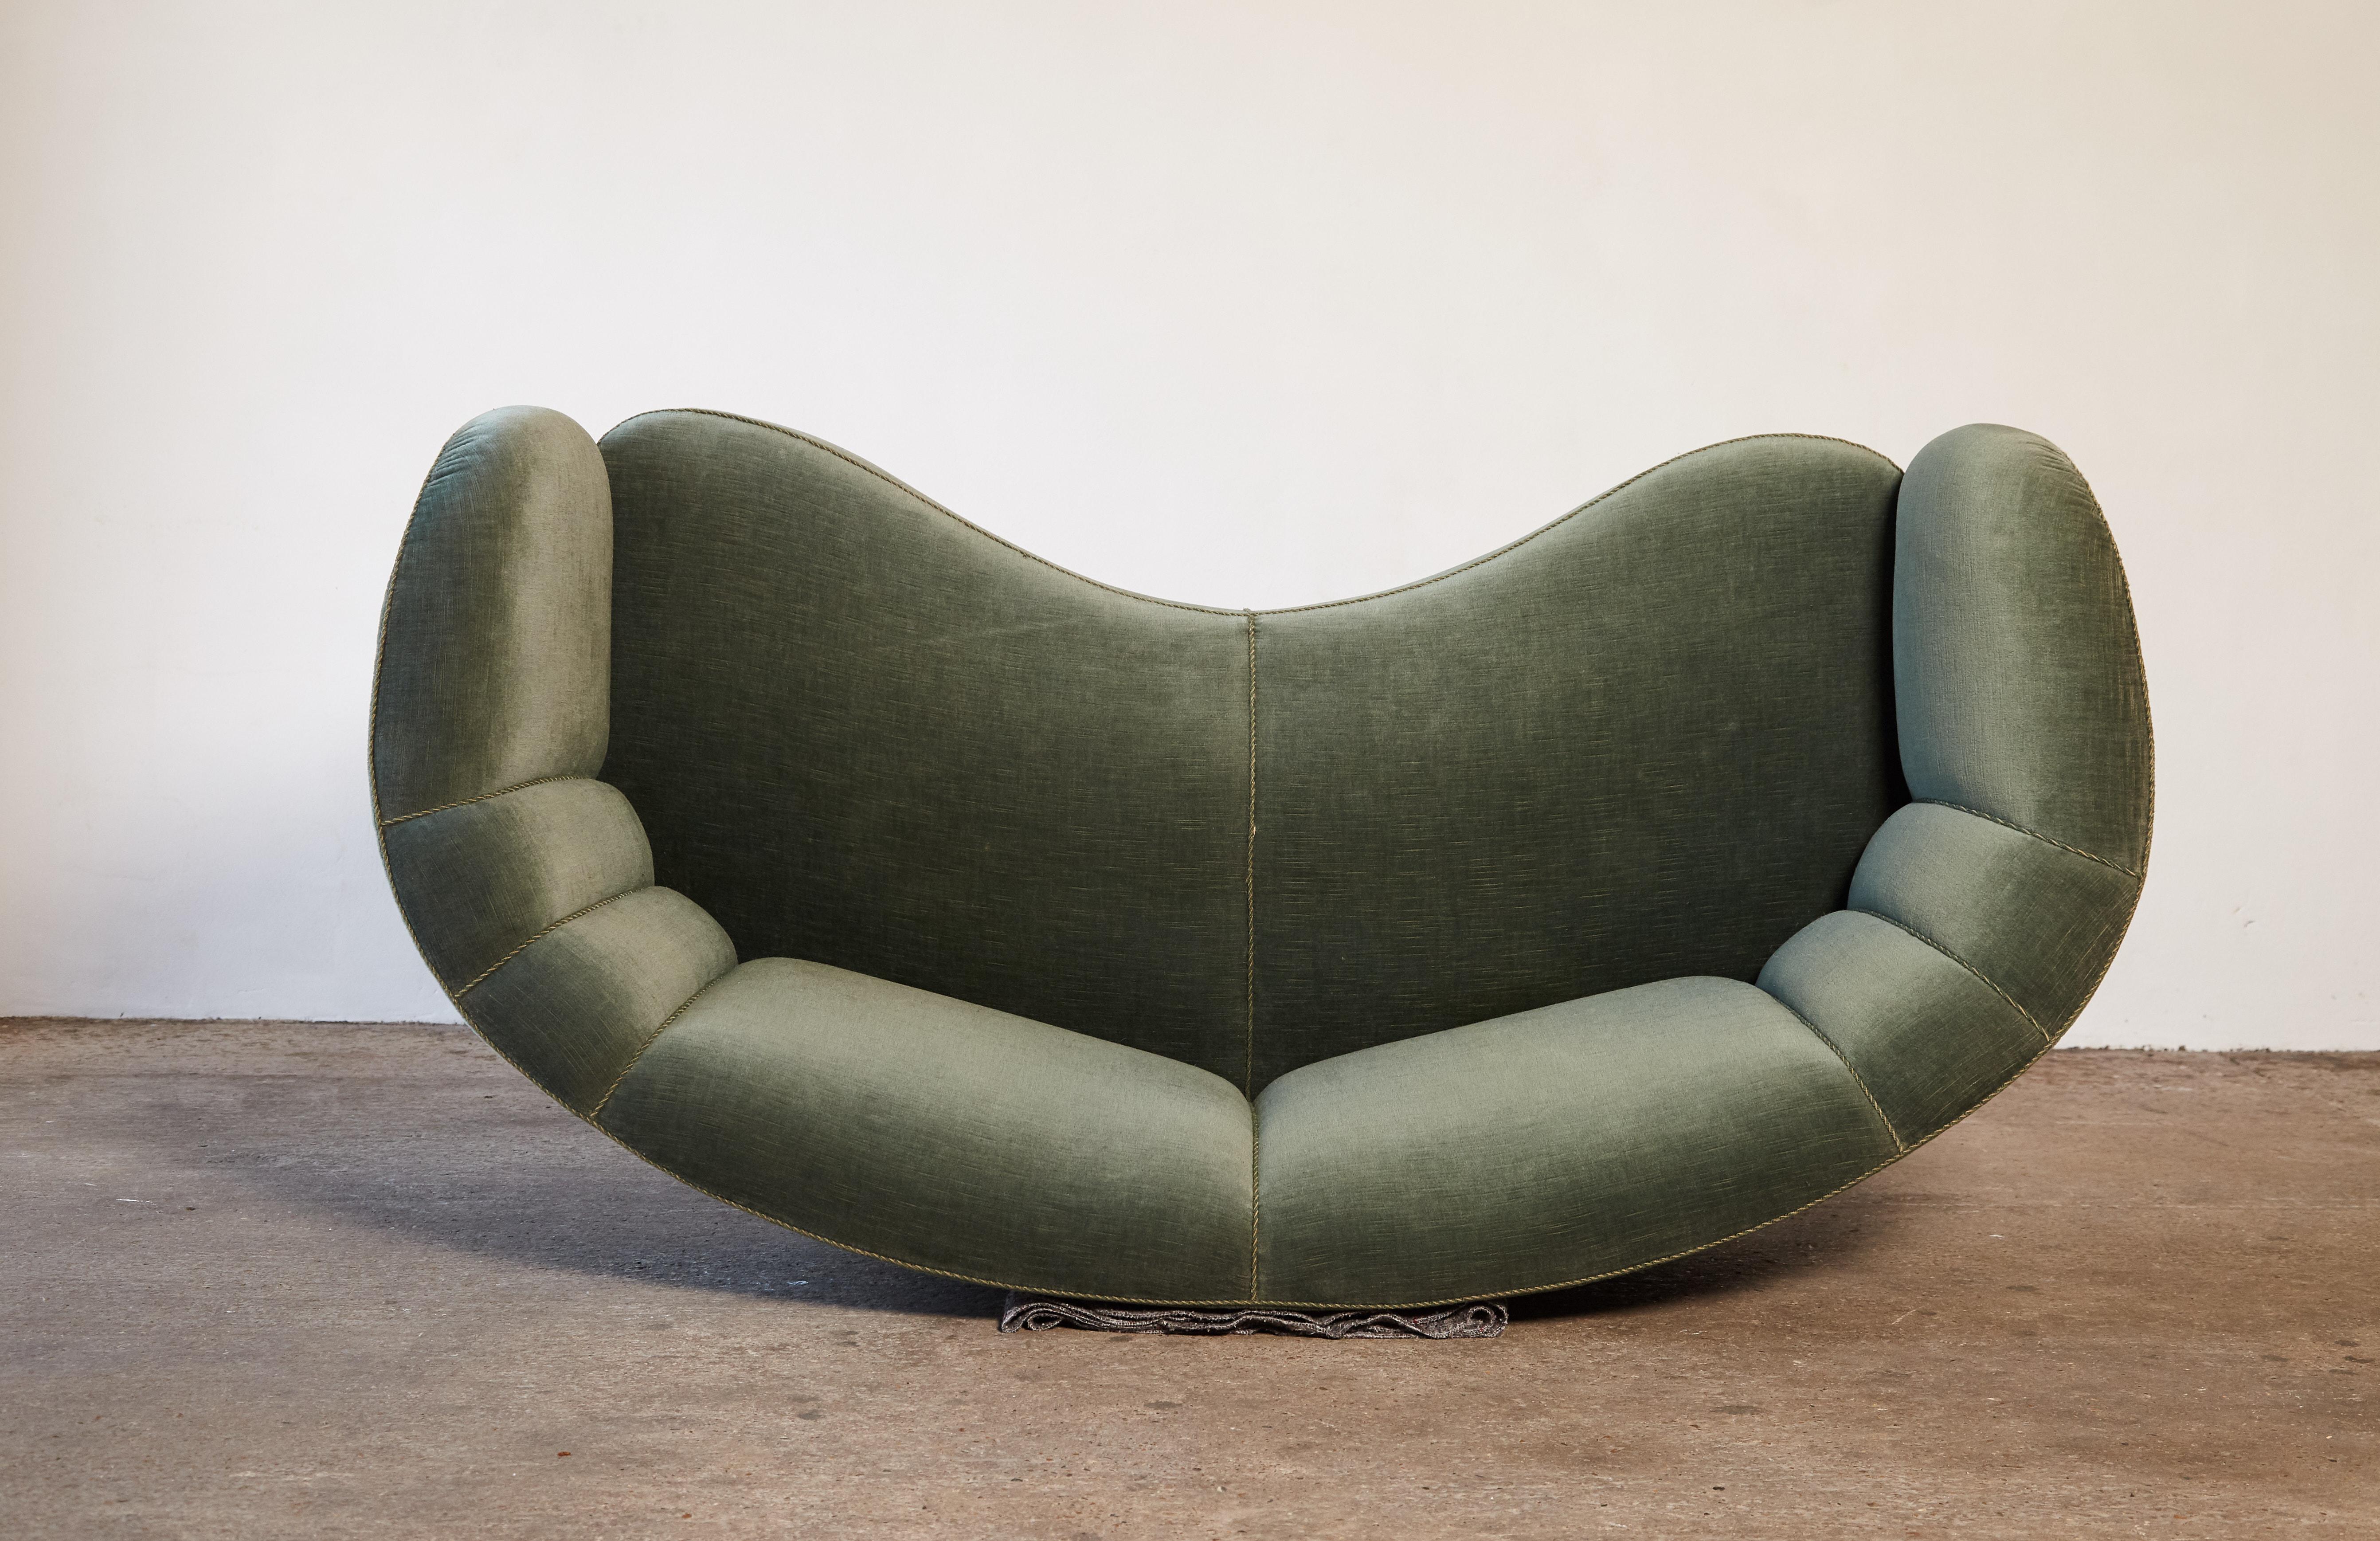 Fabric Curved Green Banana Sofa in Style of Viggo Boesen / Fritz Hansen, Denmark, 1940s